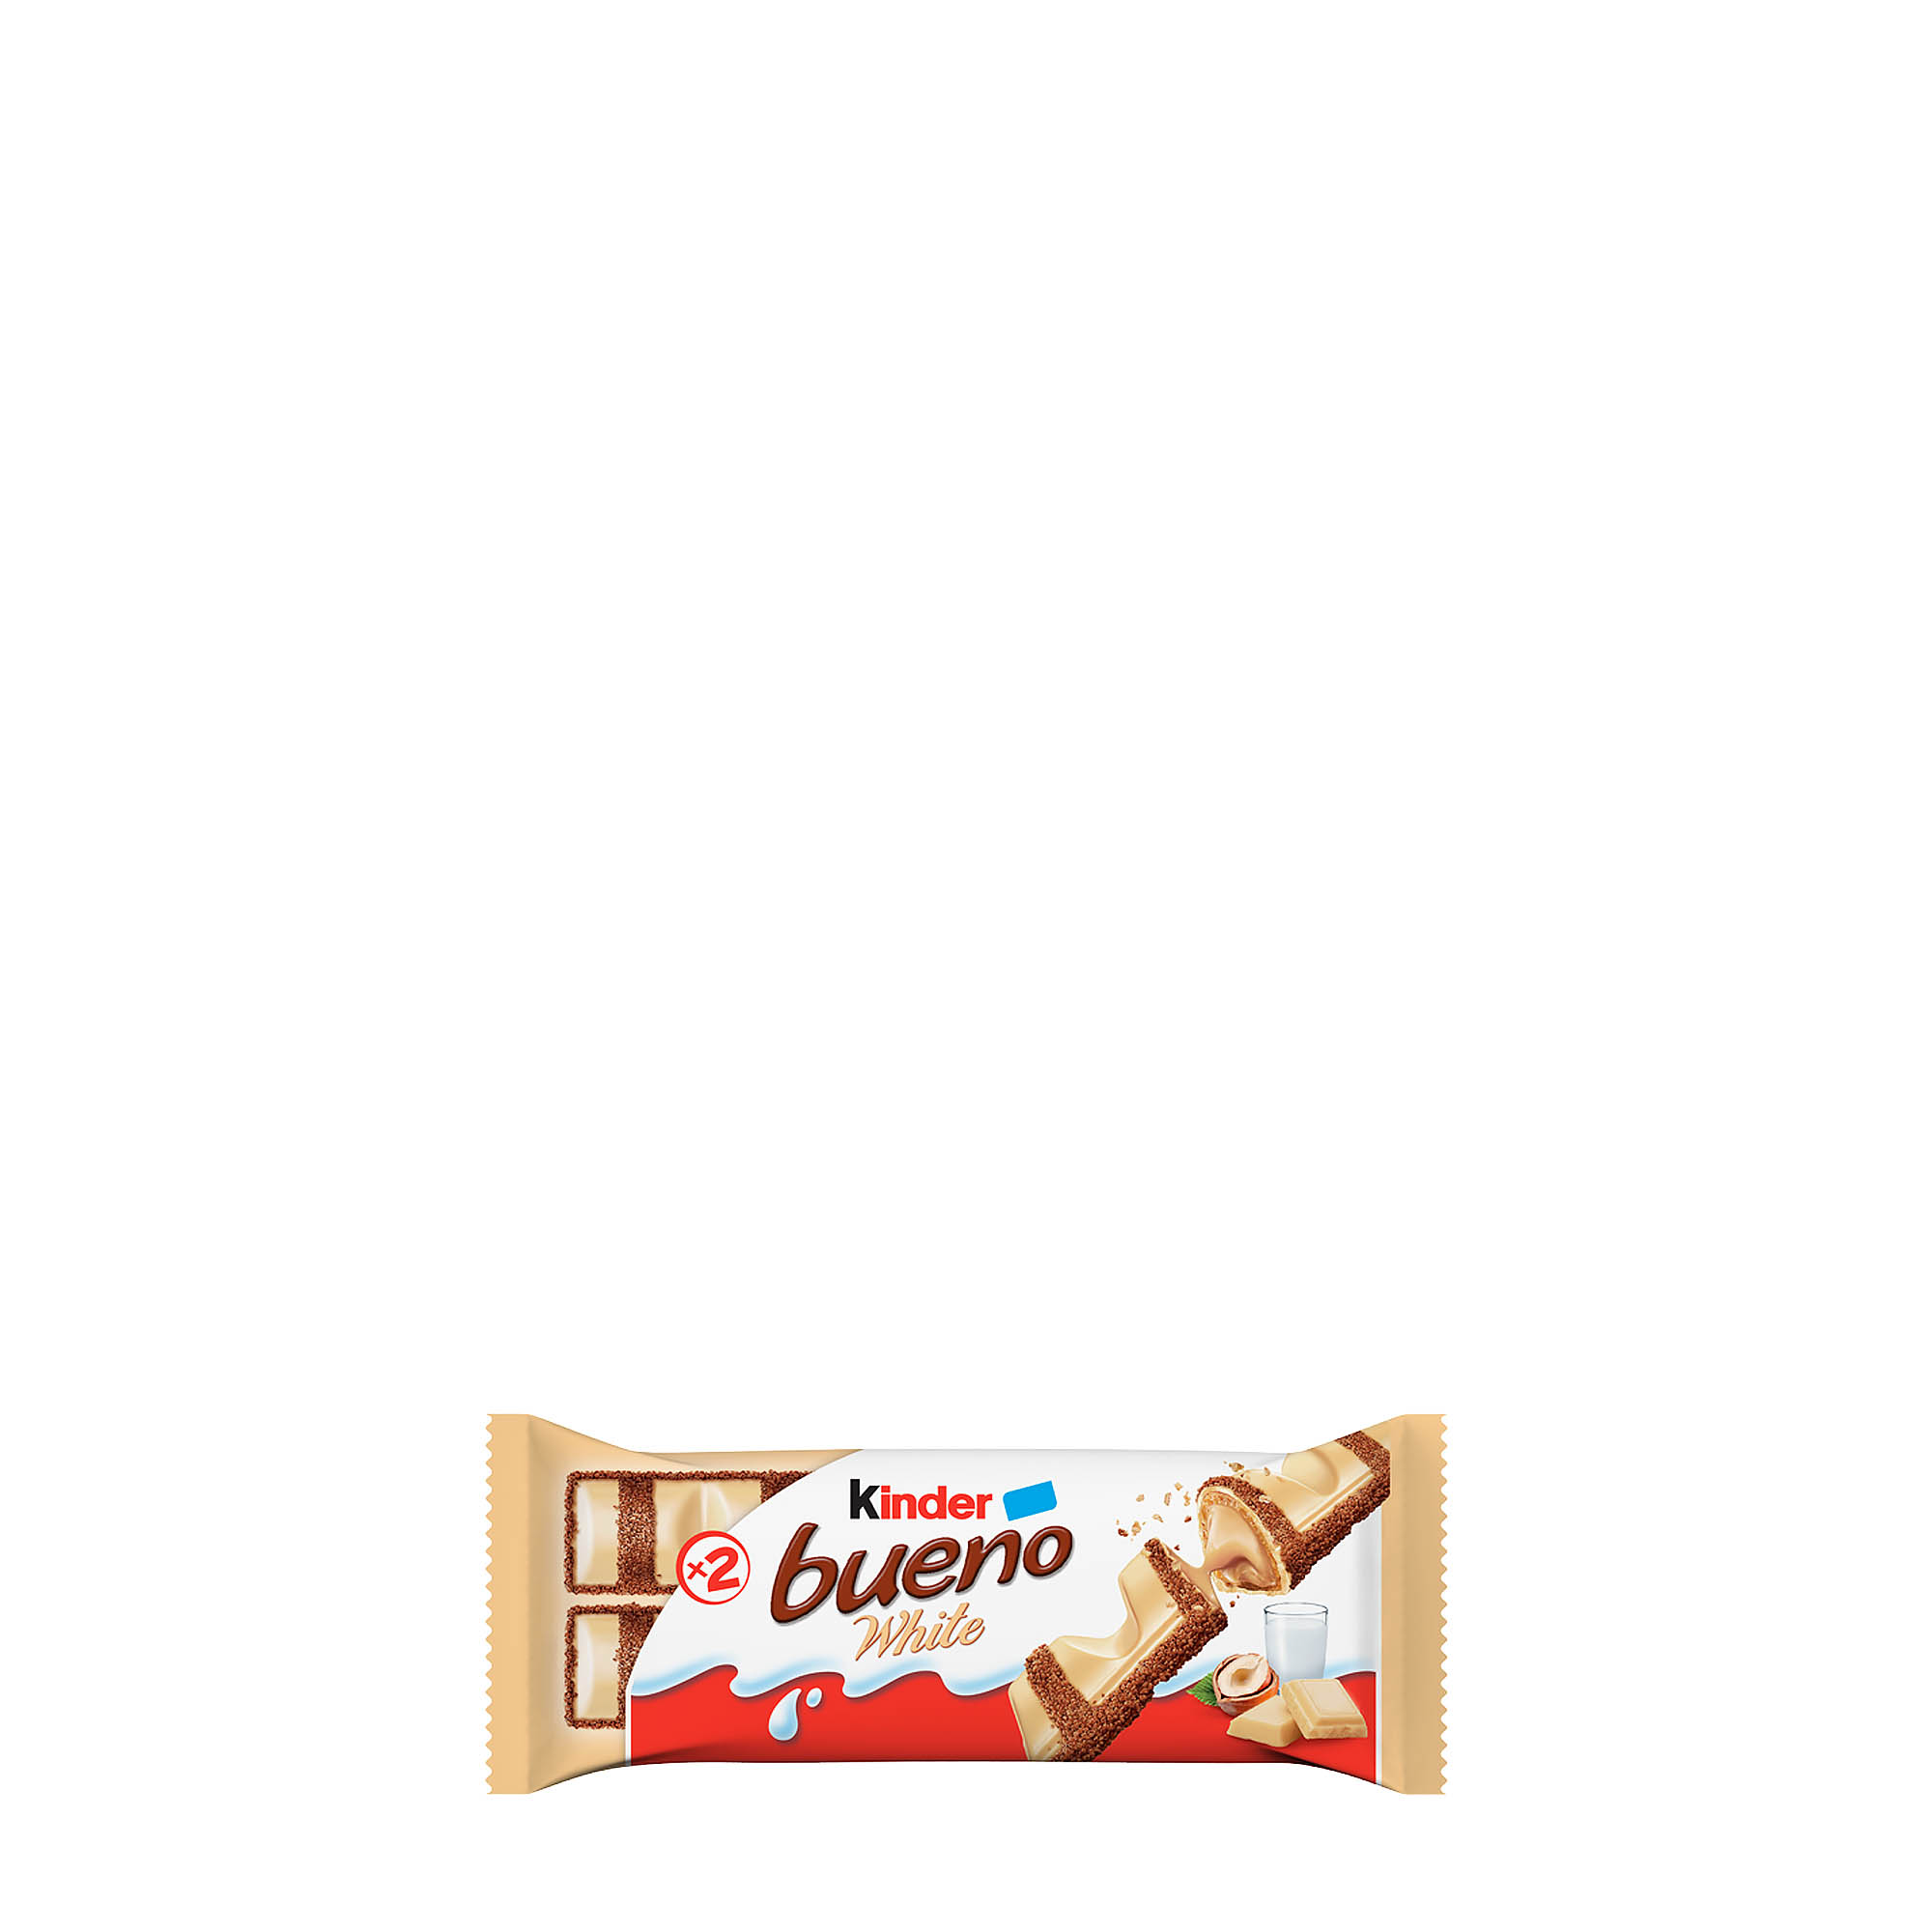 Kinder Bueno Crispy Creamy Chocolate Bars, 20 ct.